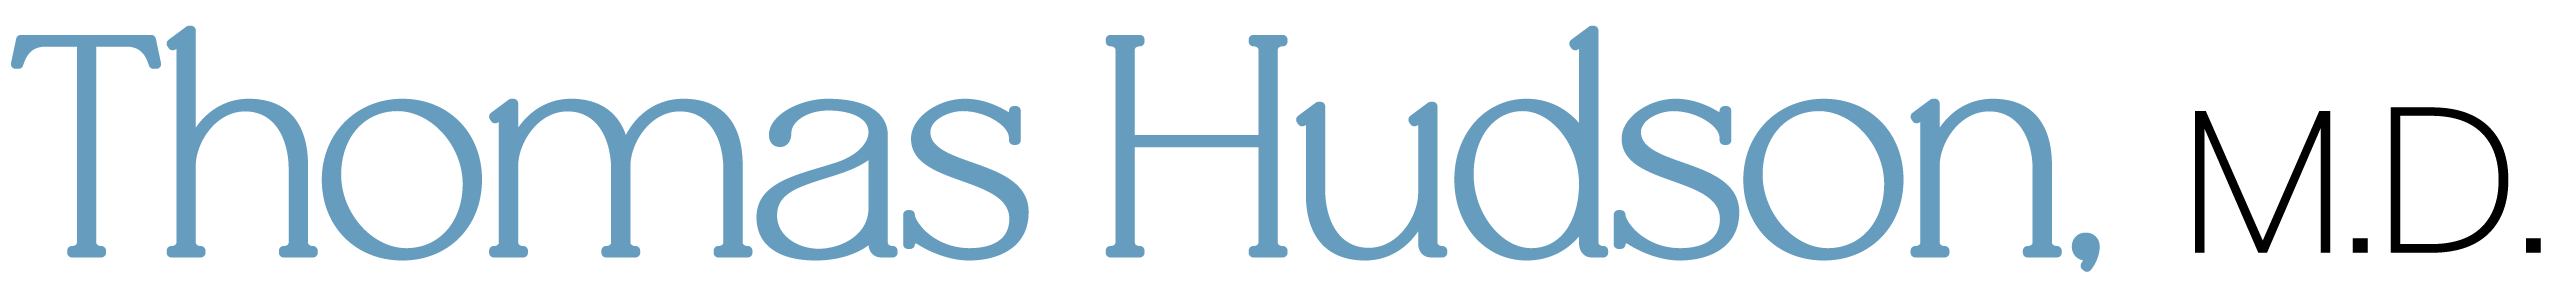 Thomas Hudson, M.D. logo